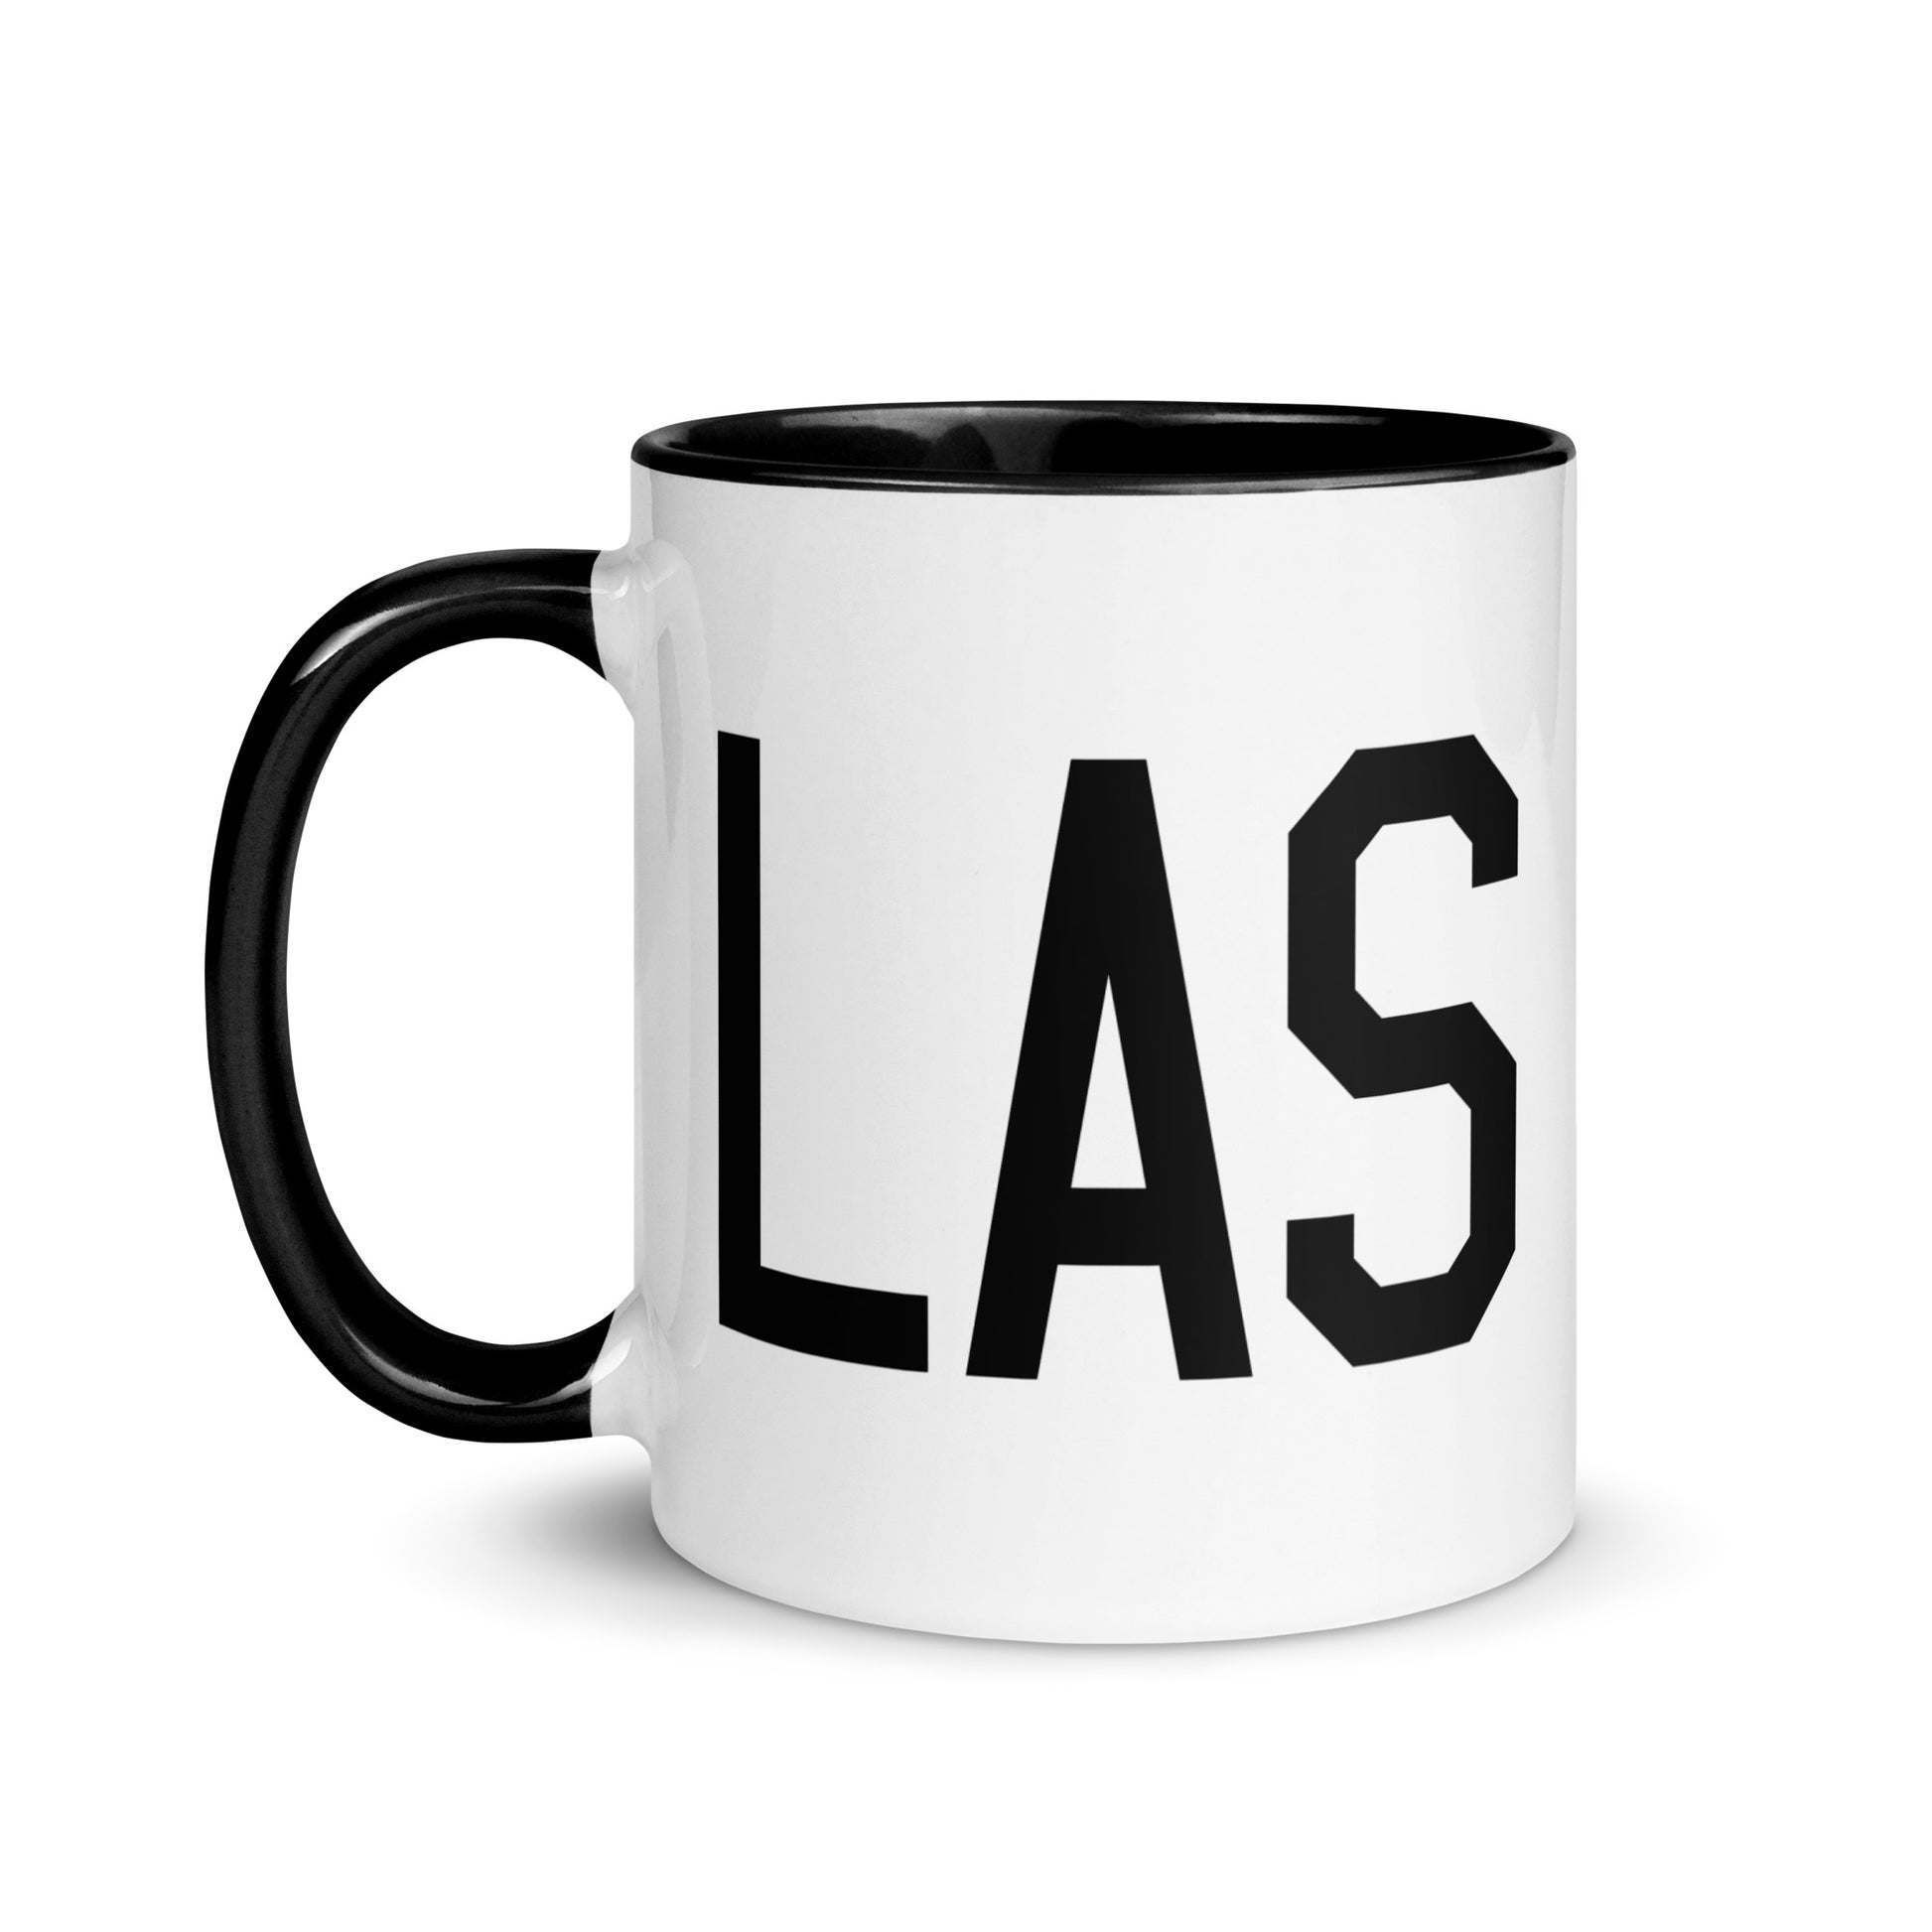 Aviation-Theme Coffee Mug - Black • LAS Las Vegas • YHM Designs - Image 03